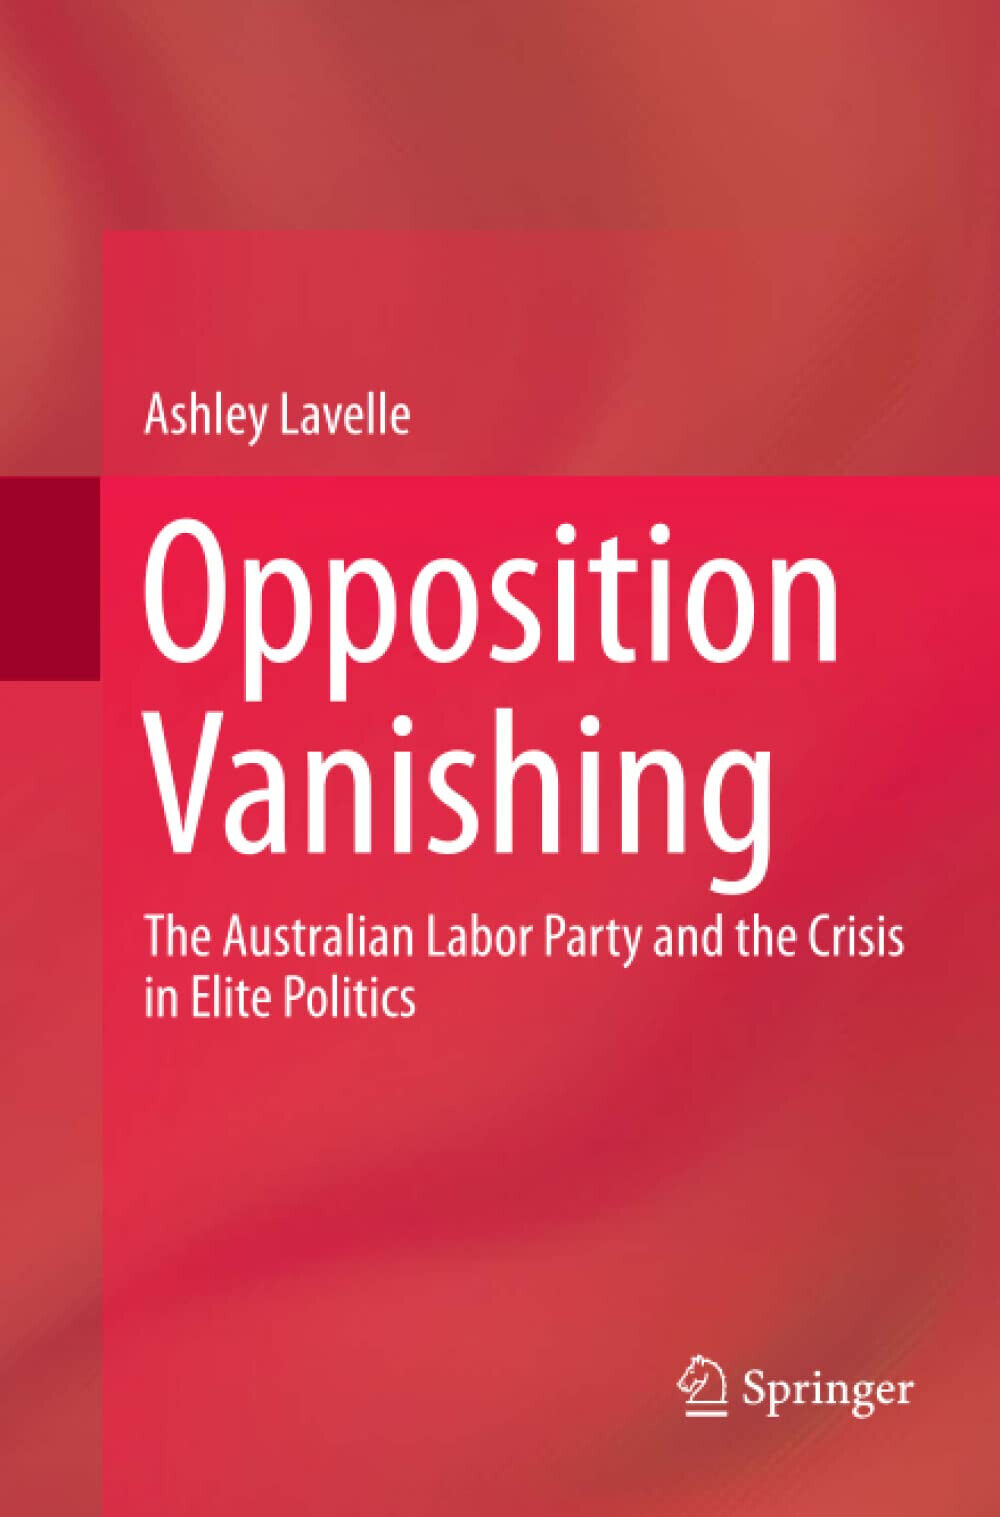 Opposition Vanishing - Ashley Lavelle - Springer, 2019